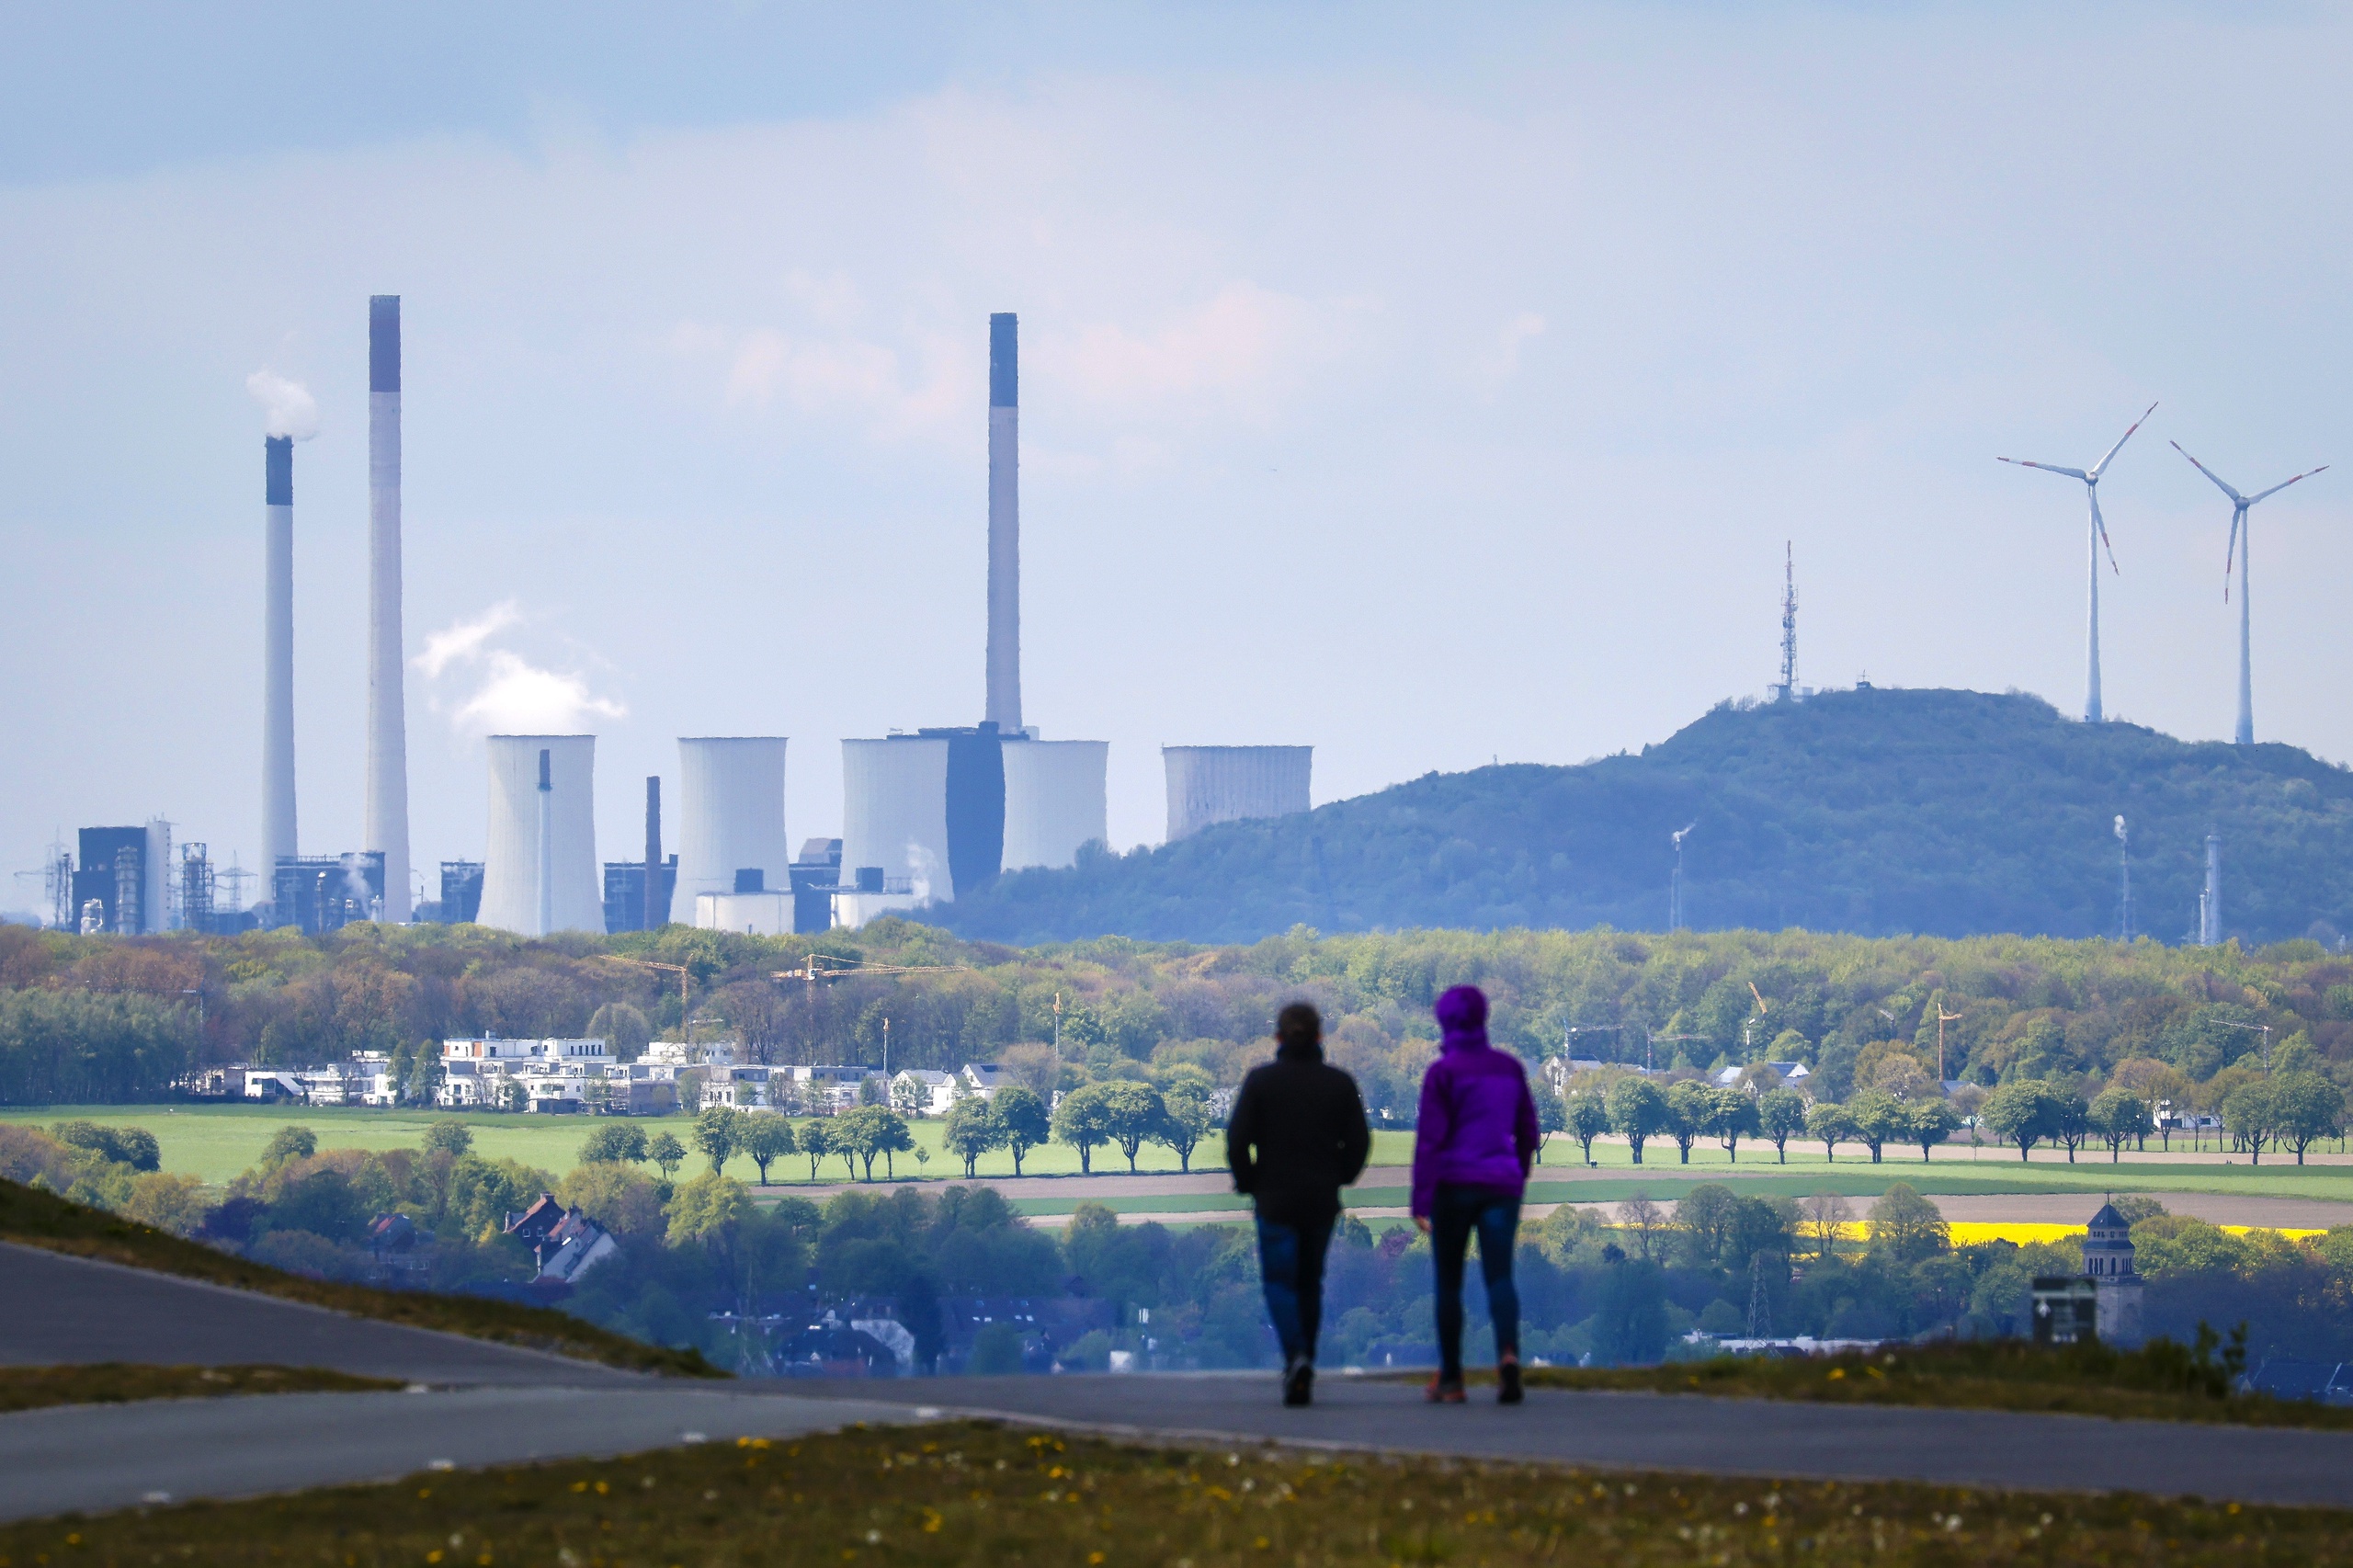 De Europese Unie heeft voor bijna 100 miljard euro aan uitstootvergunningen vergeven aan de vervuilende industrie, zo stelt het Wereldnatuurfonds (WWF).